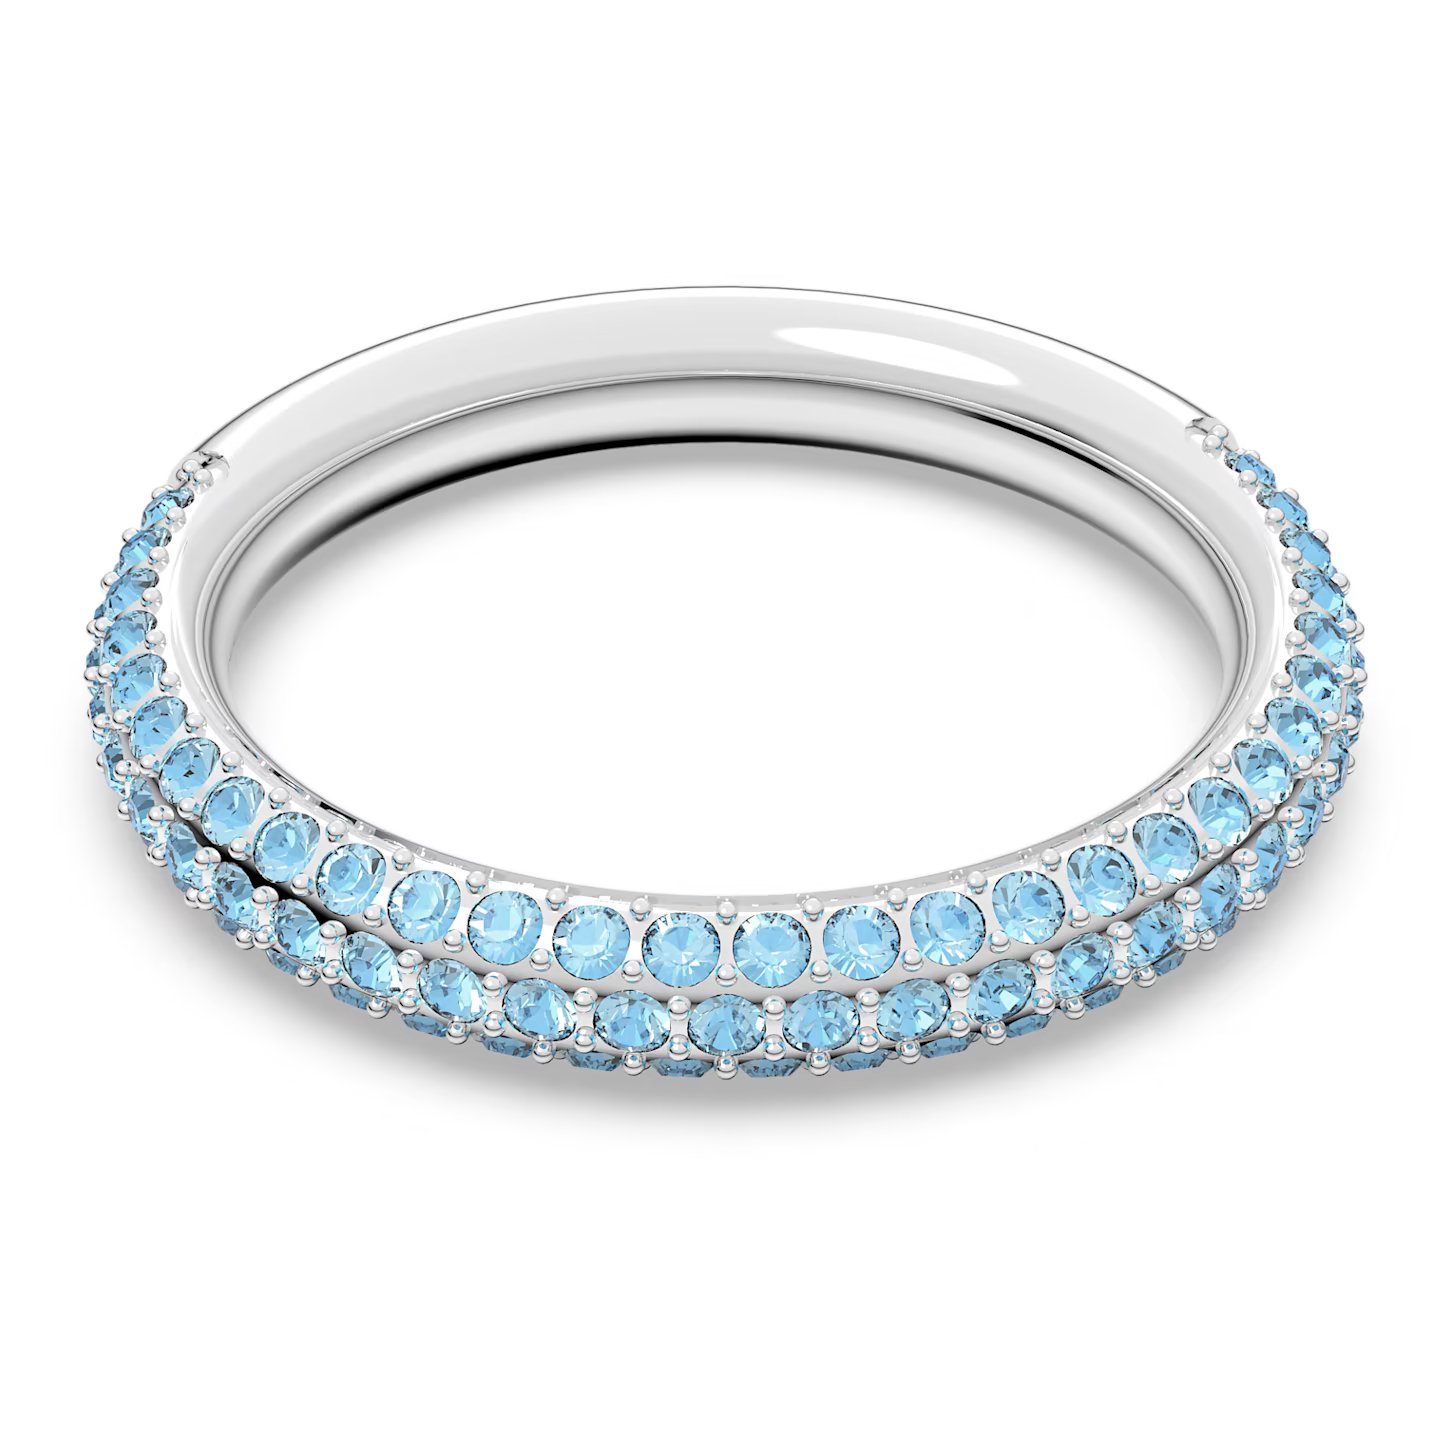 Swarovski Nádherný prsteň s modrými kryštálmi Swarovski Stone 5642903 58 mm